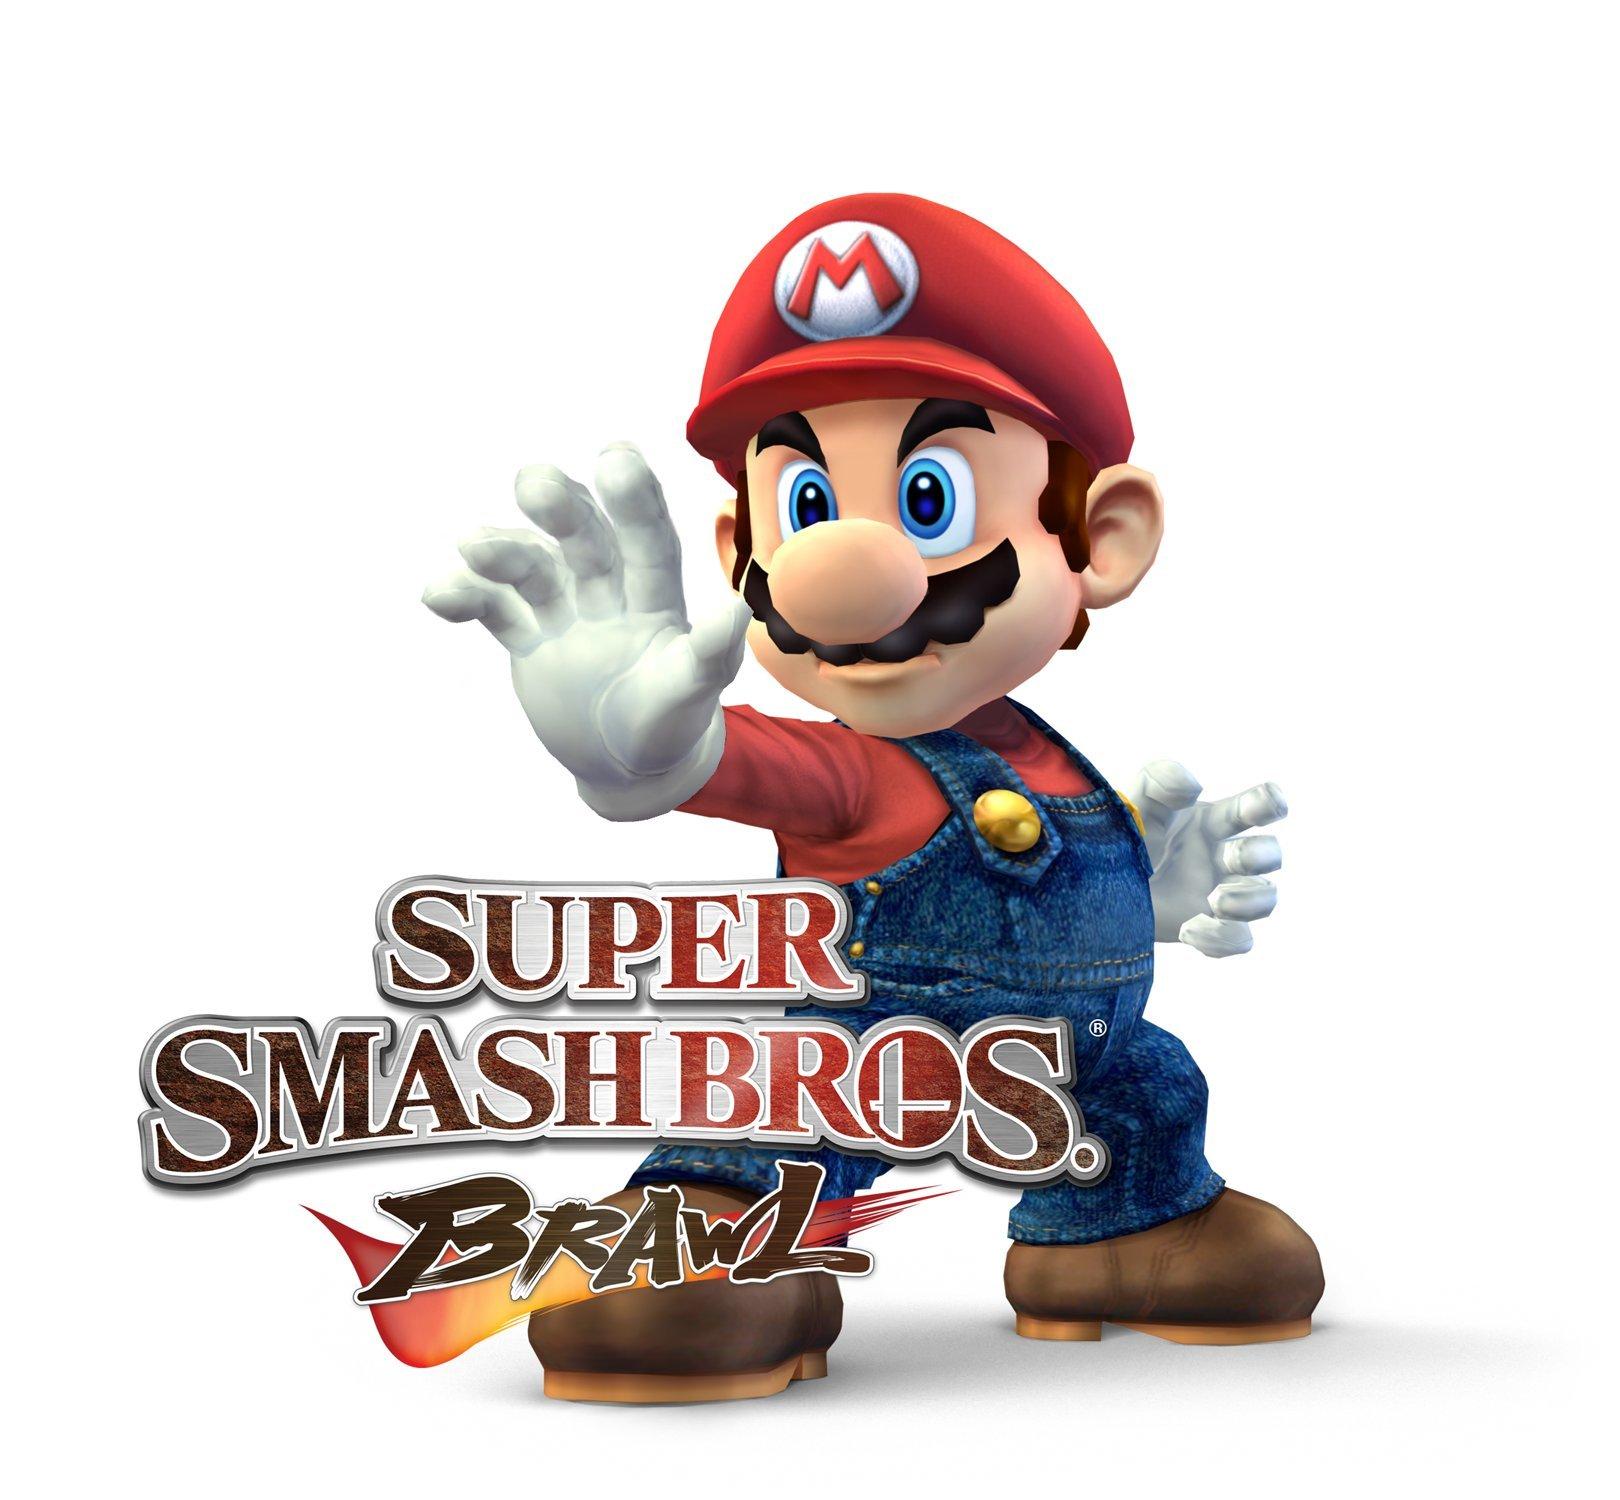 Mario smash bros. Super Mario Smash Bros. Smash Bros Brawl. Mario Brawl. Super Mario Brawl.